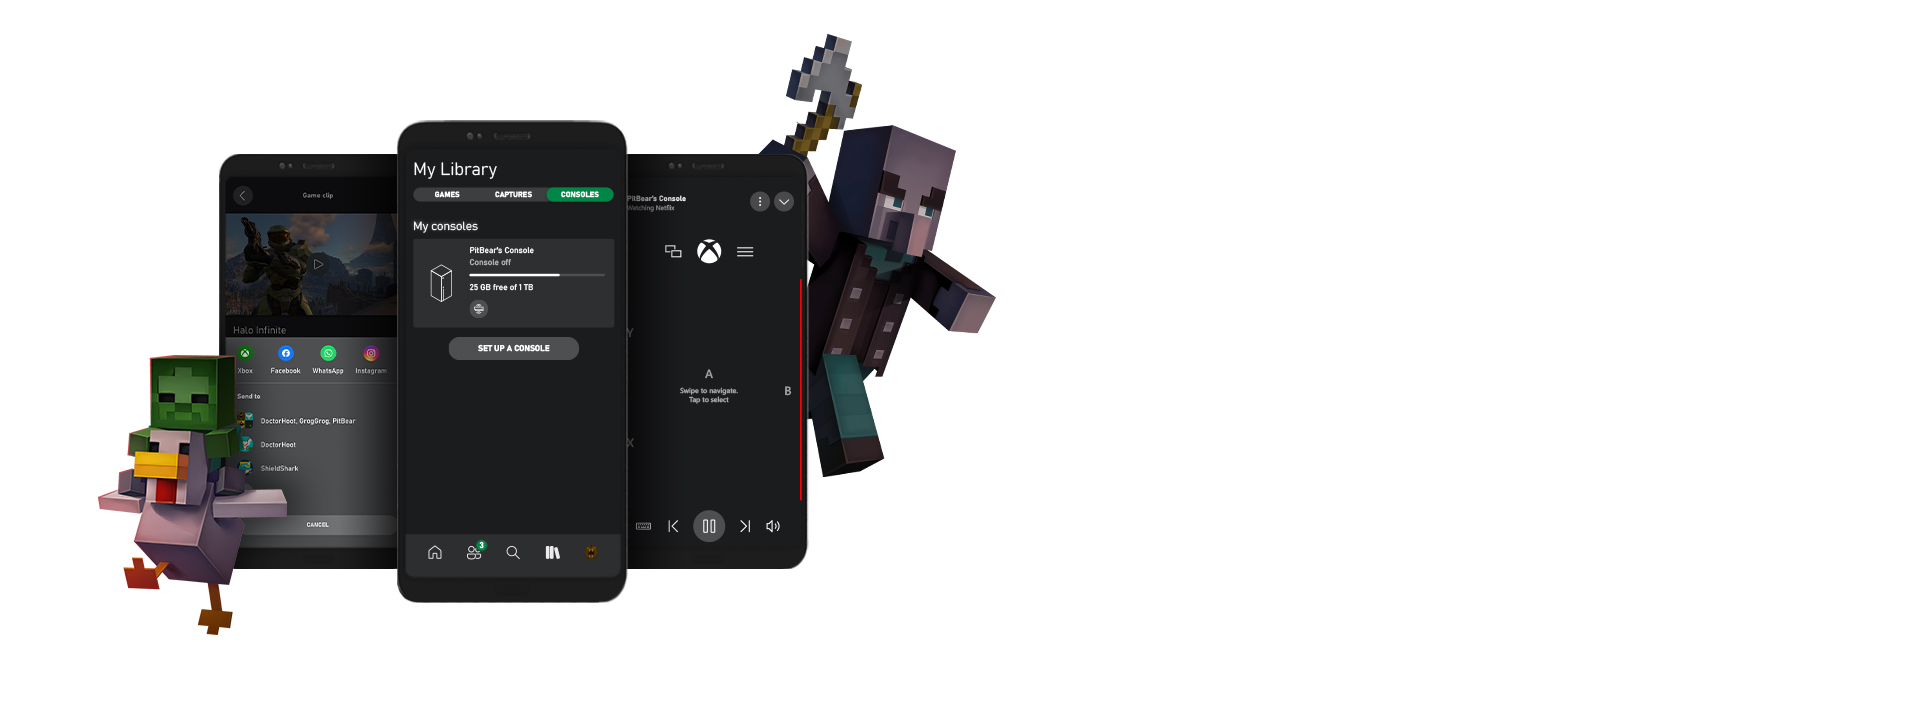 Los personajes de Minecraft rodean varias capturas de pantalla de la app de Xbox para la interfaz de usuario del dispositivo móvil.